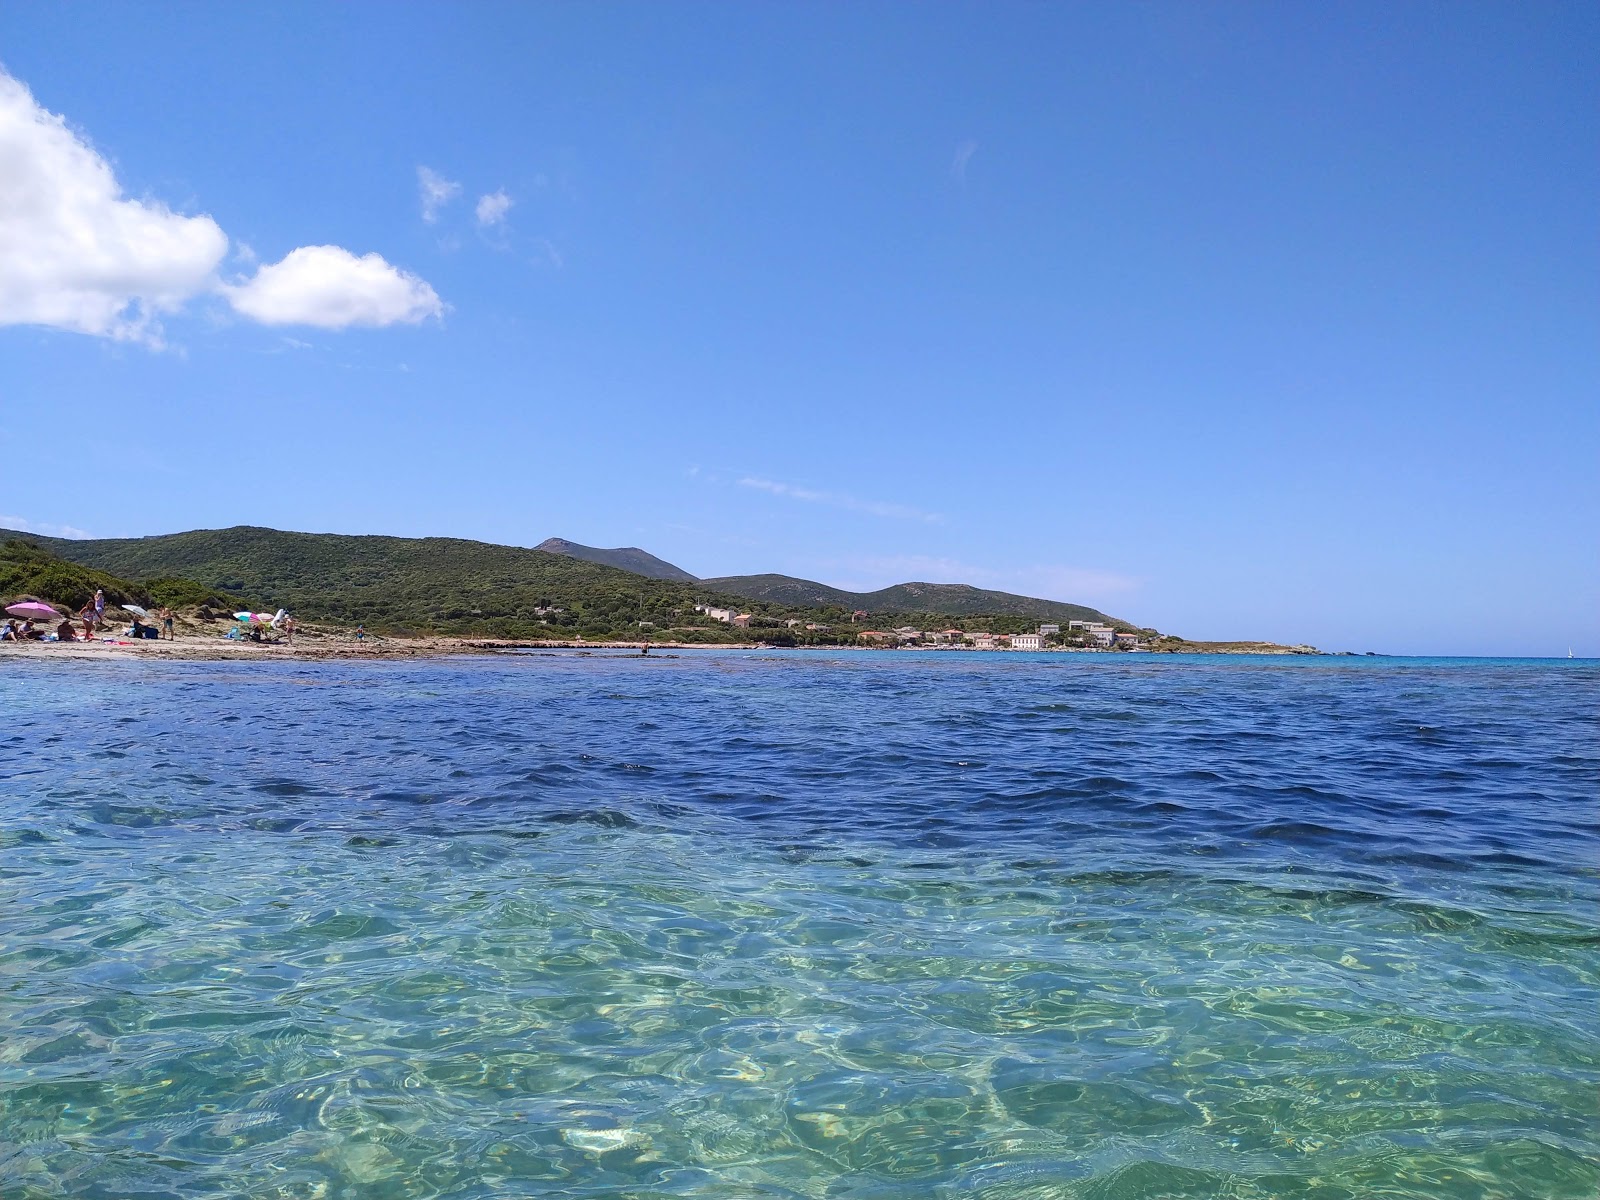 Fotografie cu Barcaggio beach cu o suprafață de apa pură turcoaz